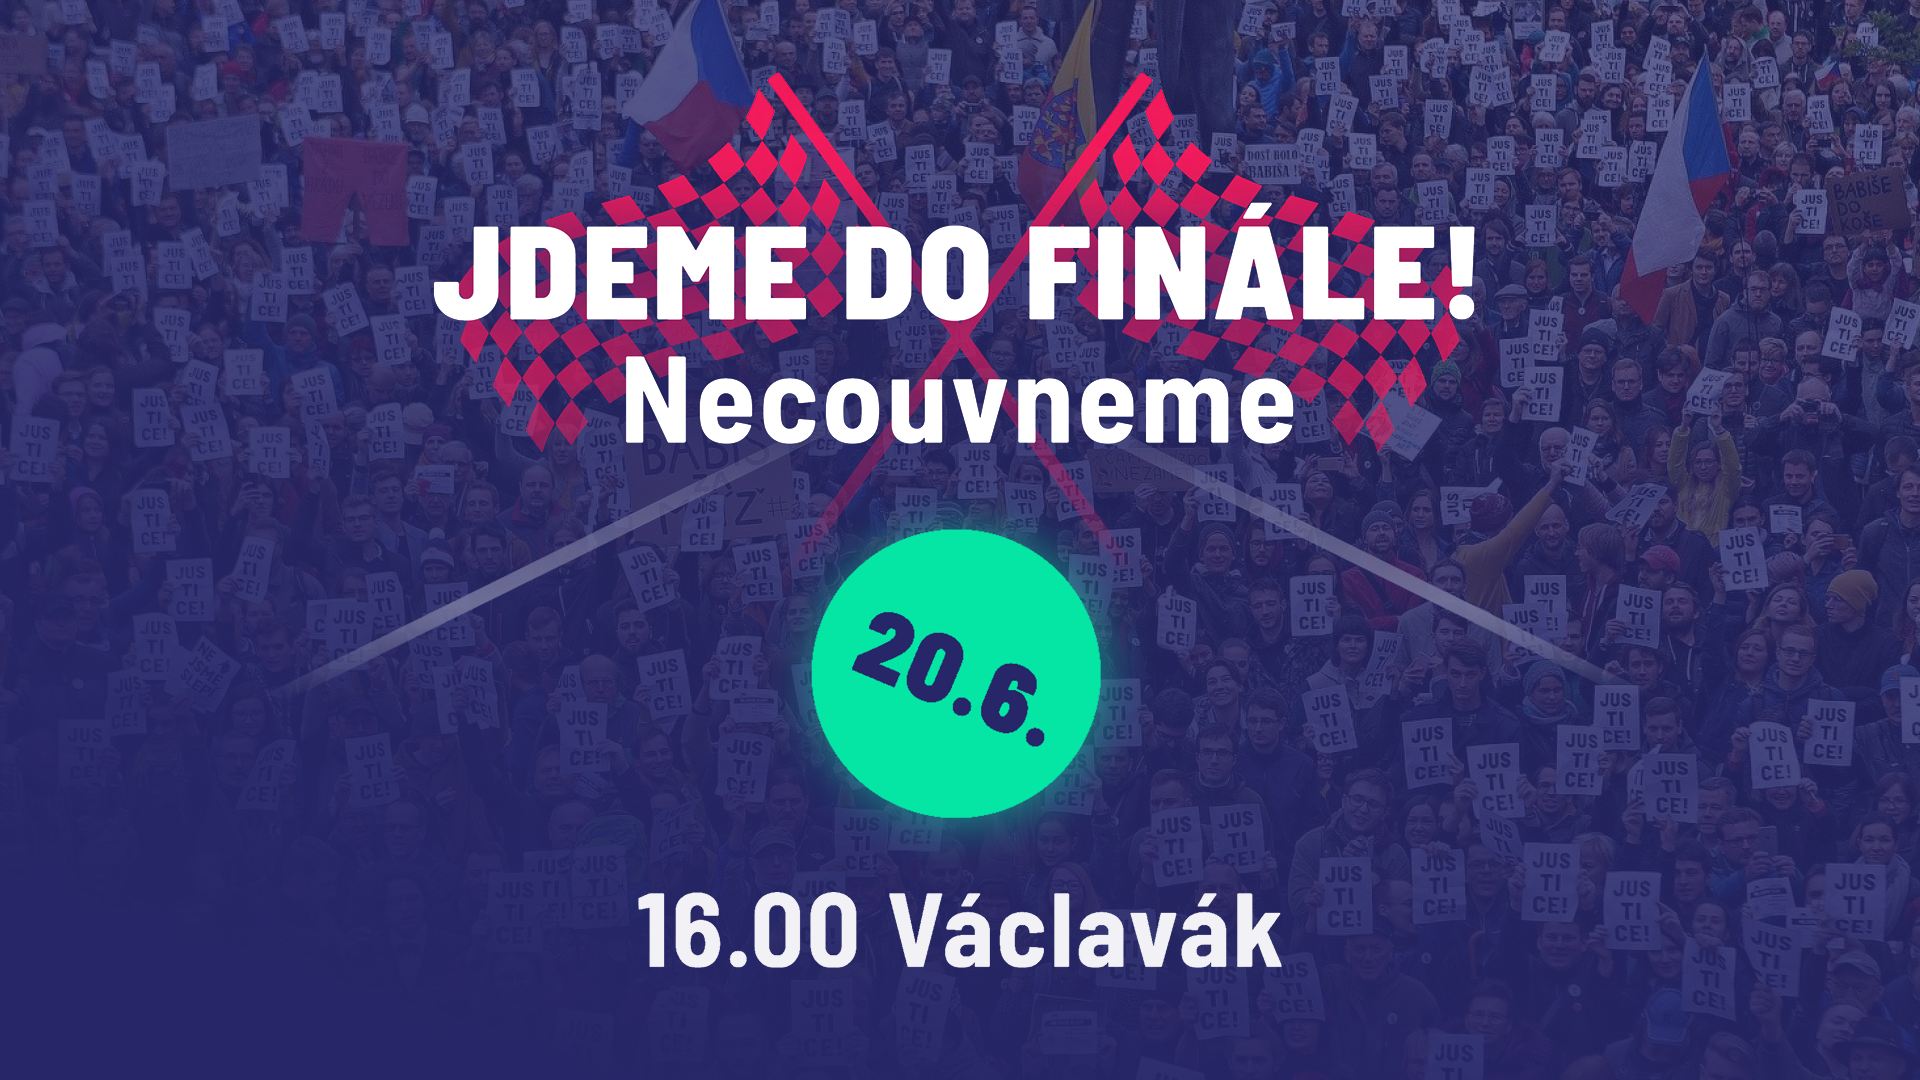 JDEME DO FINÁLE: NECOUVNEME! Na Václaváku 20. června společně zahájíme kampaň na podporu demokratů